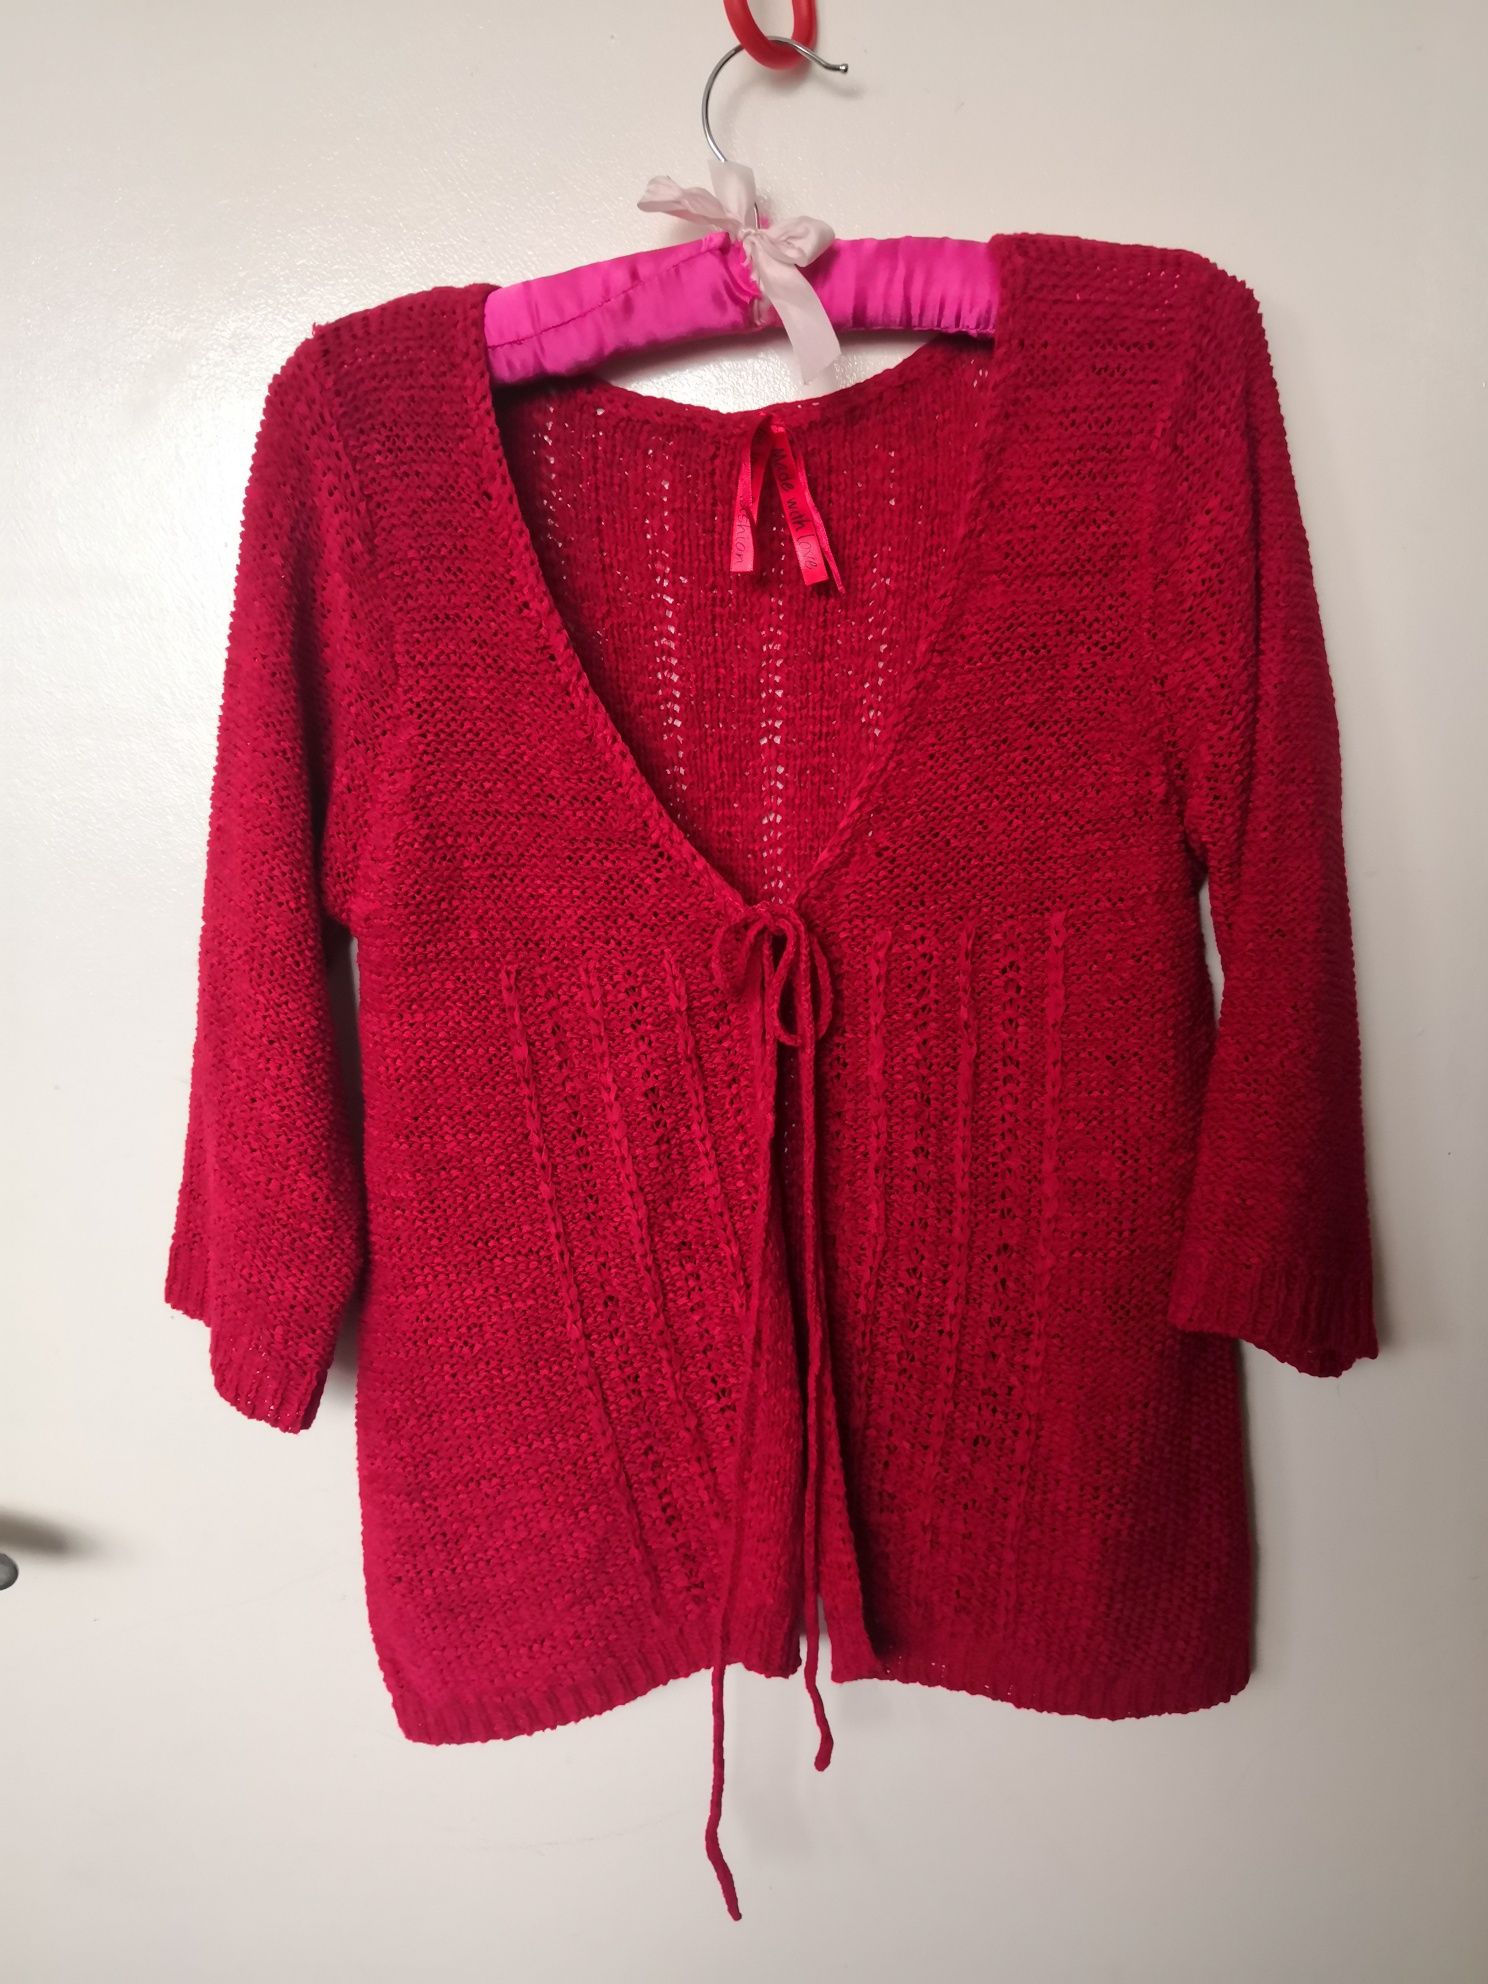 Sweterek narzutka w stylu vintage wiązana sweter